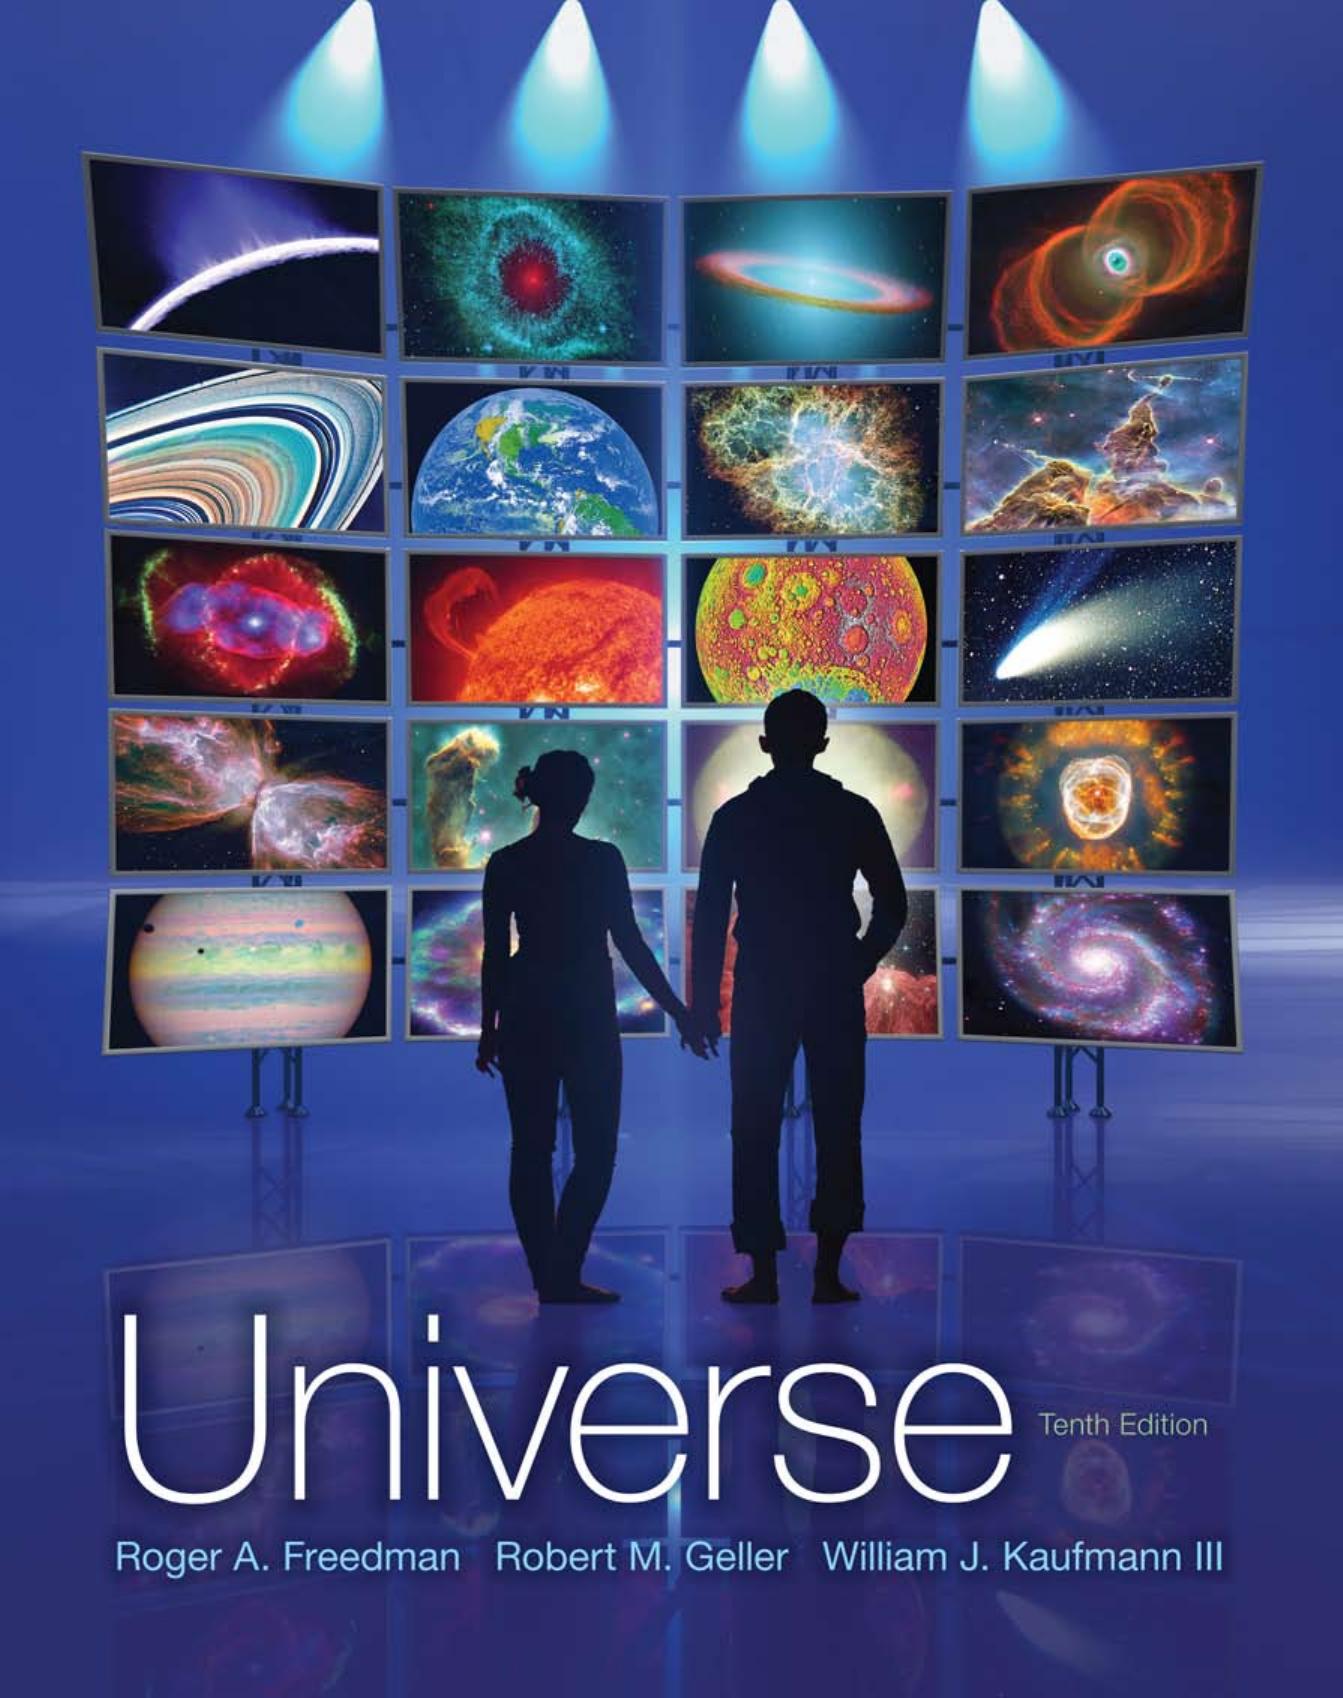 Universe 10th Edition by Roger Freedman & Robert M. Geller - Wei Zhi.jpg